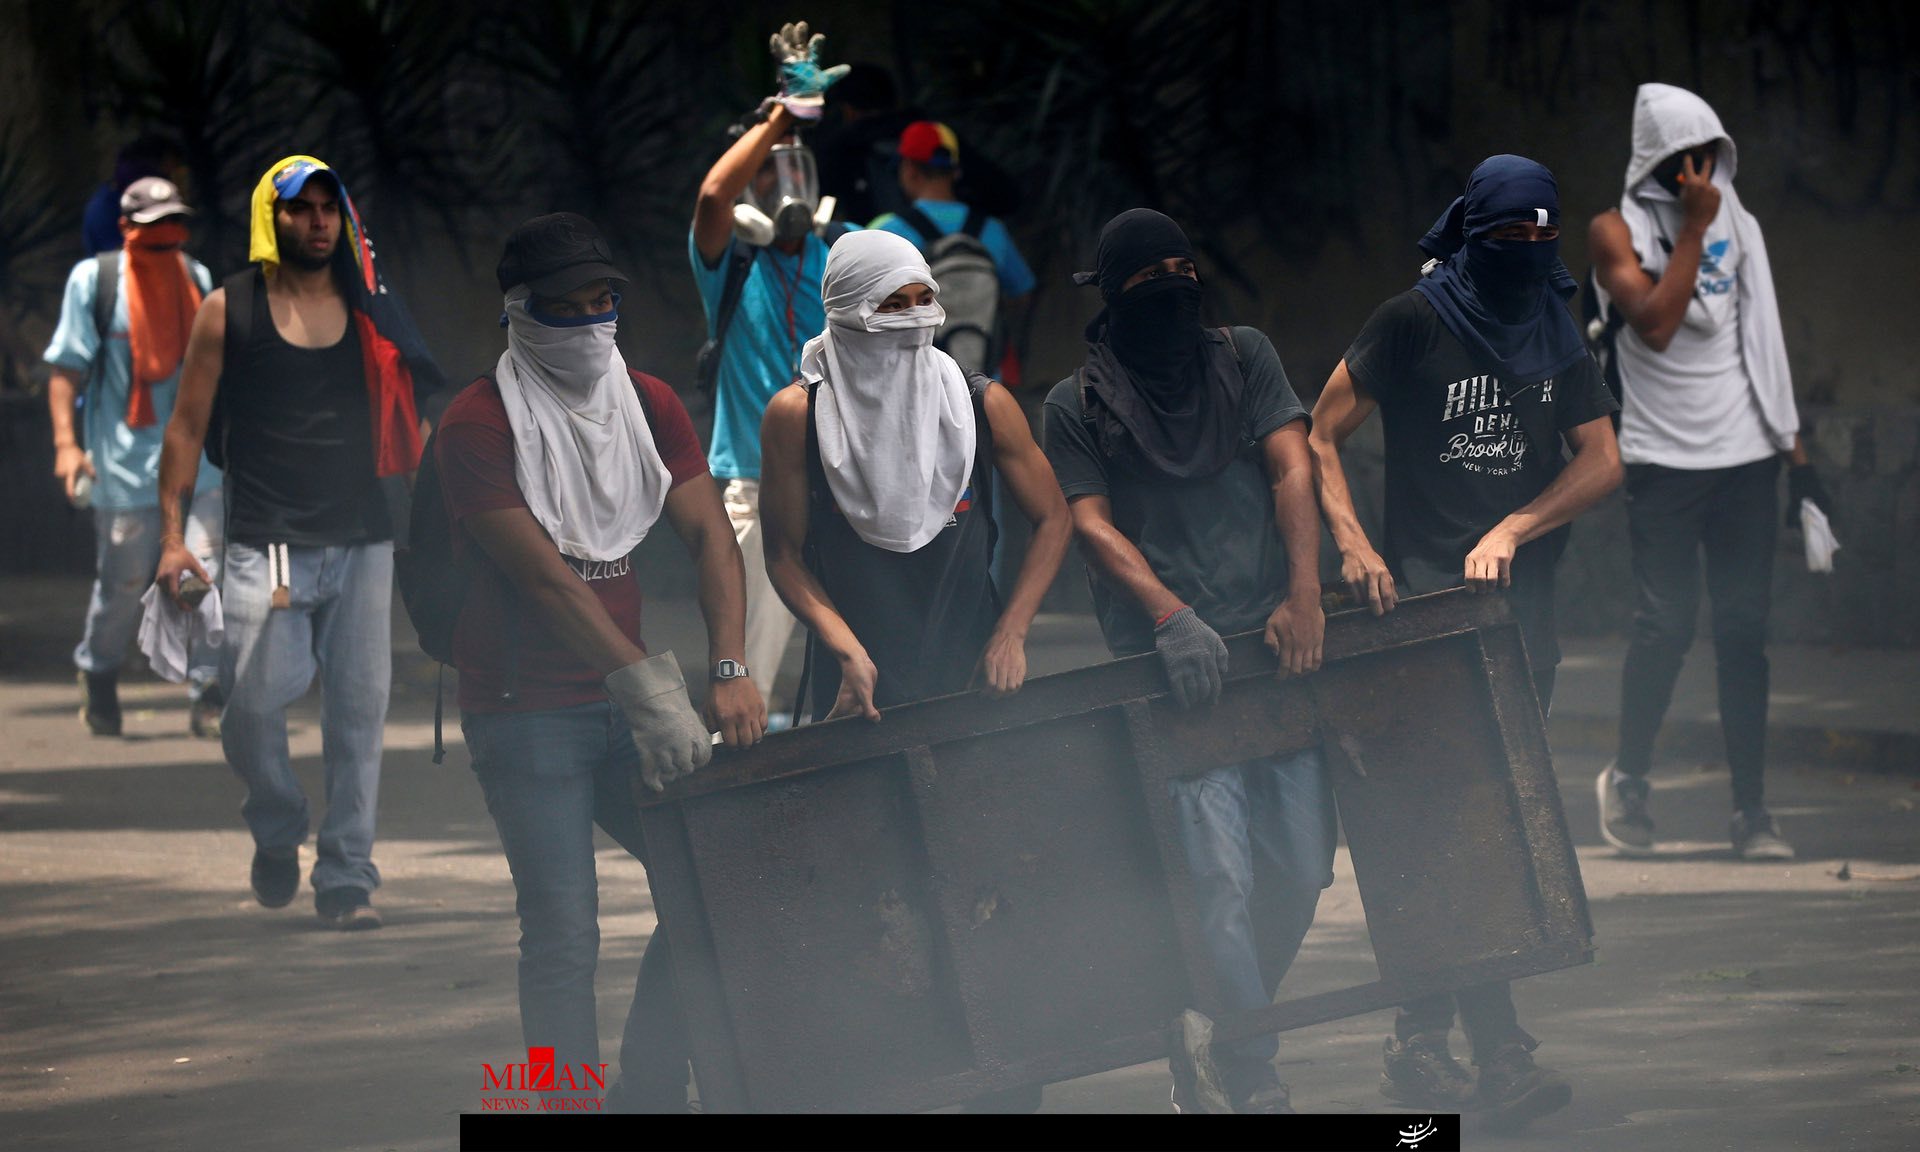 ادامه موج گسترده تظاهرات در ونزوئلا/دستکم سه نفر کشته و ده‌ها نفر زخمی شدند